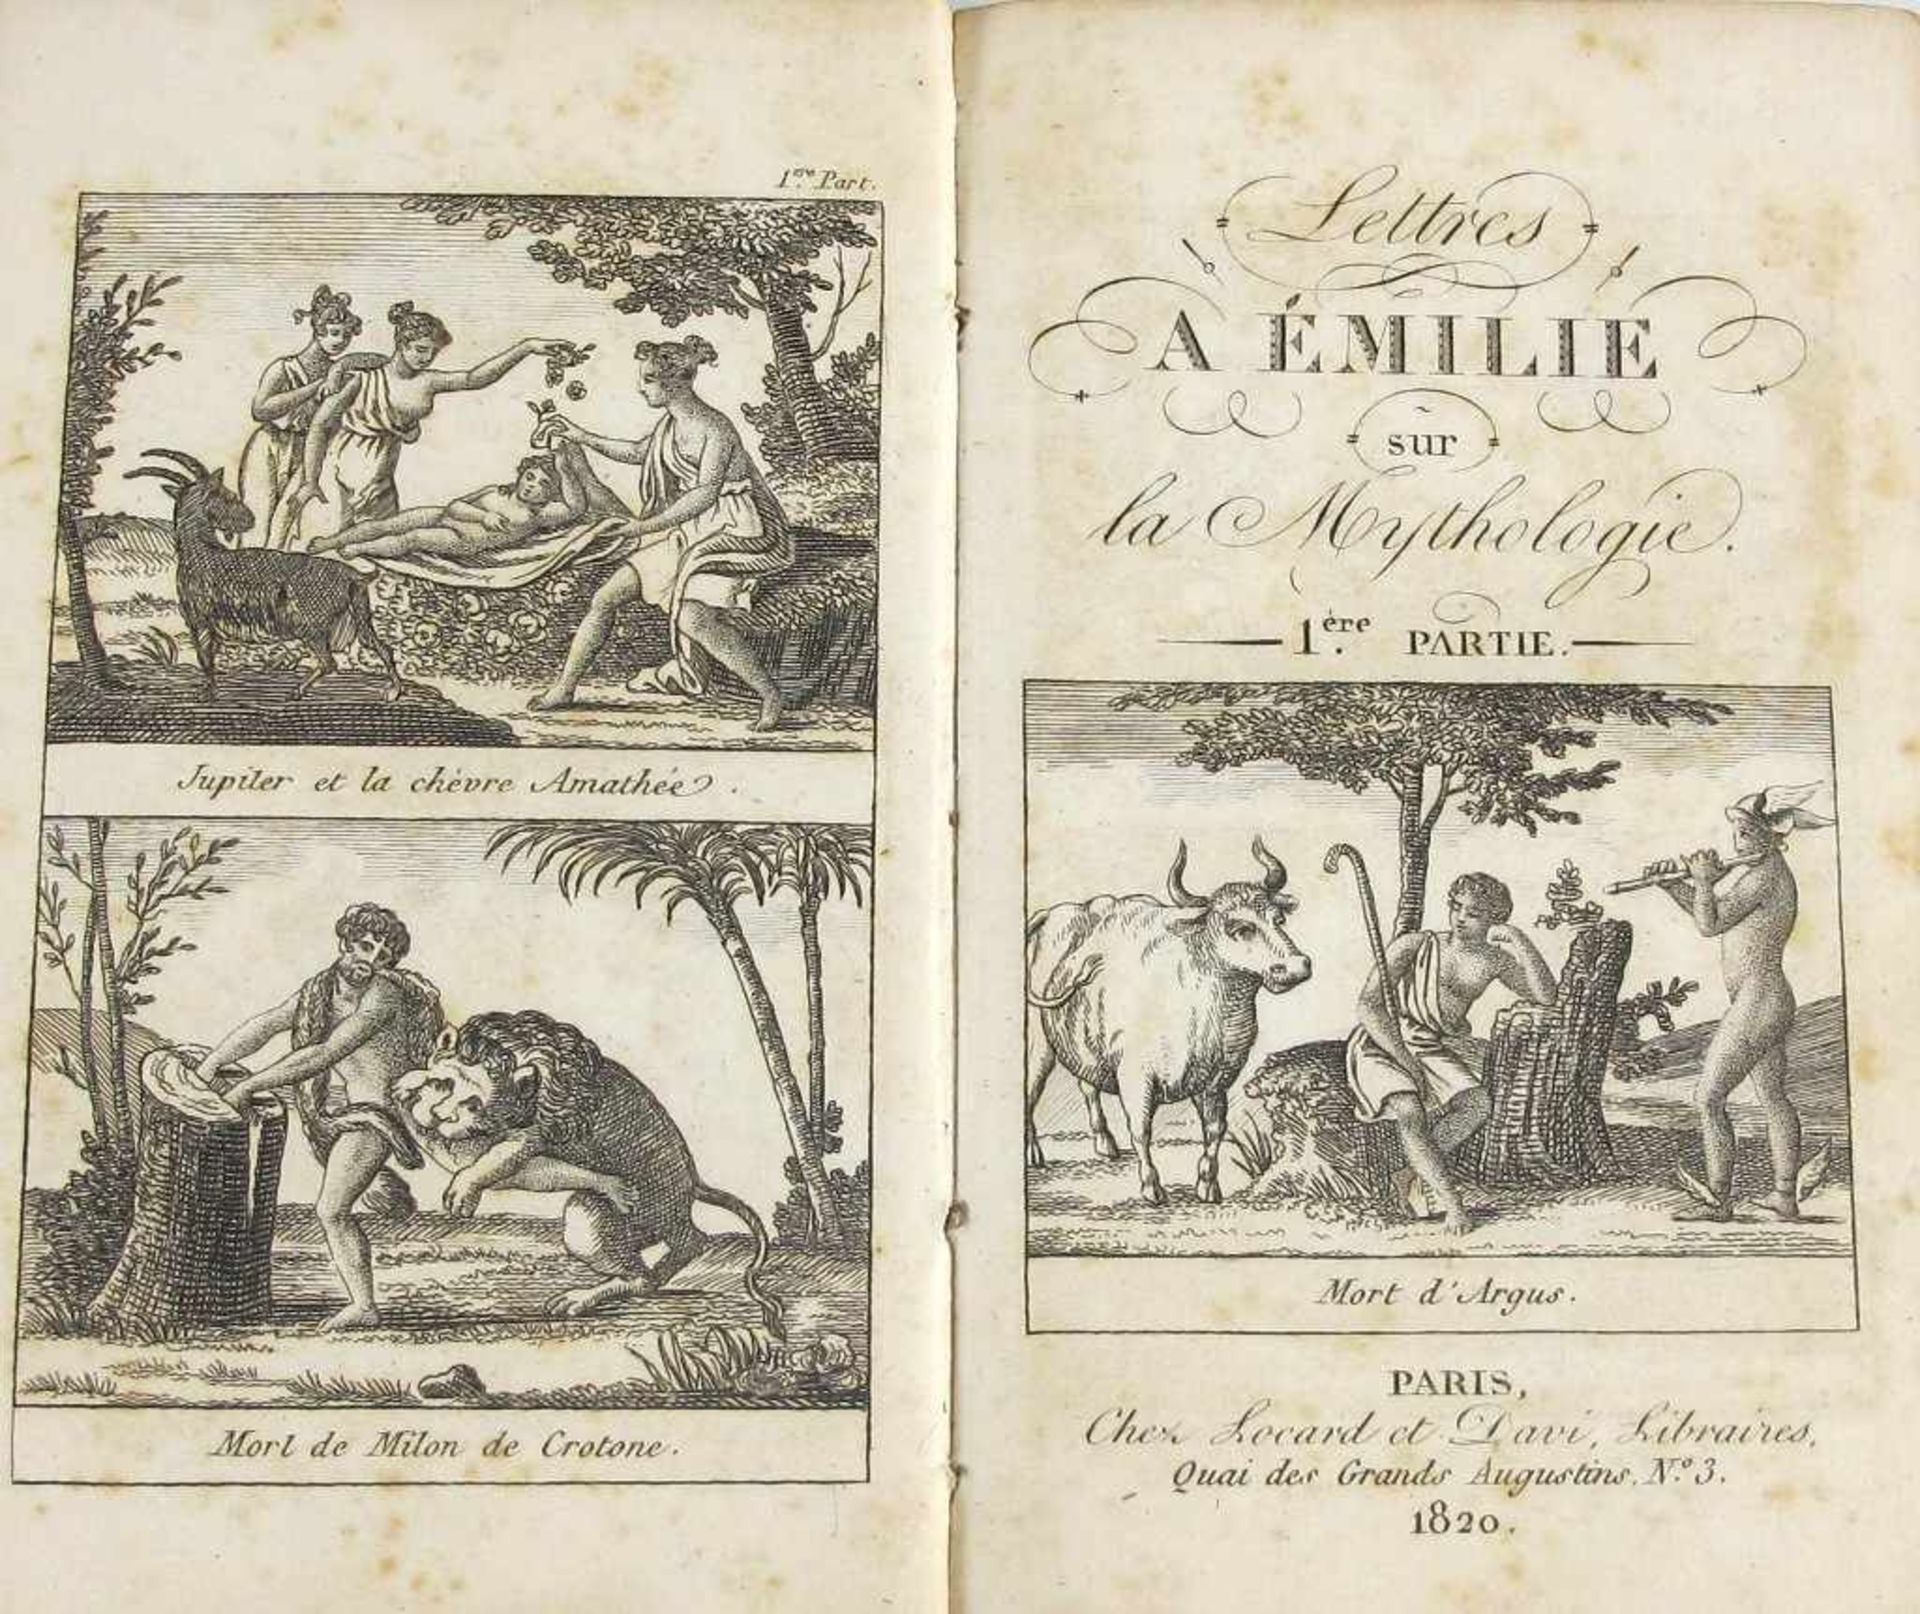 (Demoustier, Charles-Albert) Lettres a Emilie sur la Mythologie. Paris, chez Locard et Davi, 1820. - Bild 2 aus 2